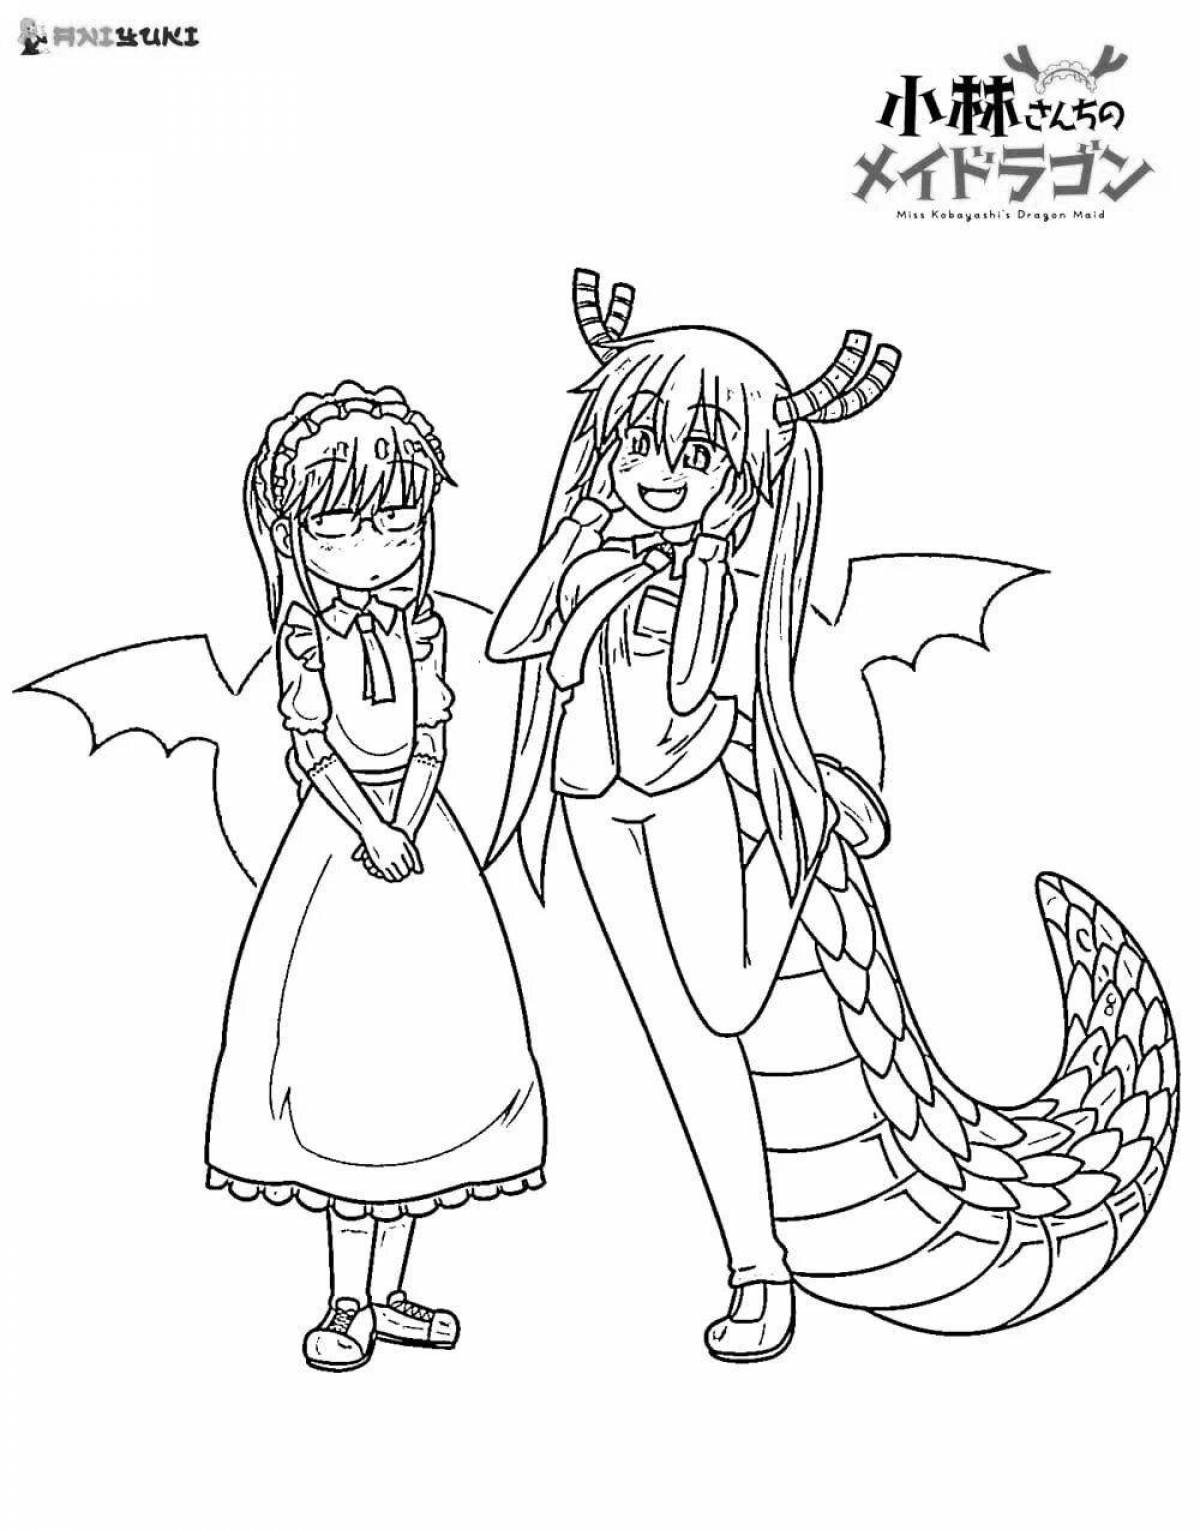 Kobayashi's awesome anime maid dragon